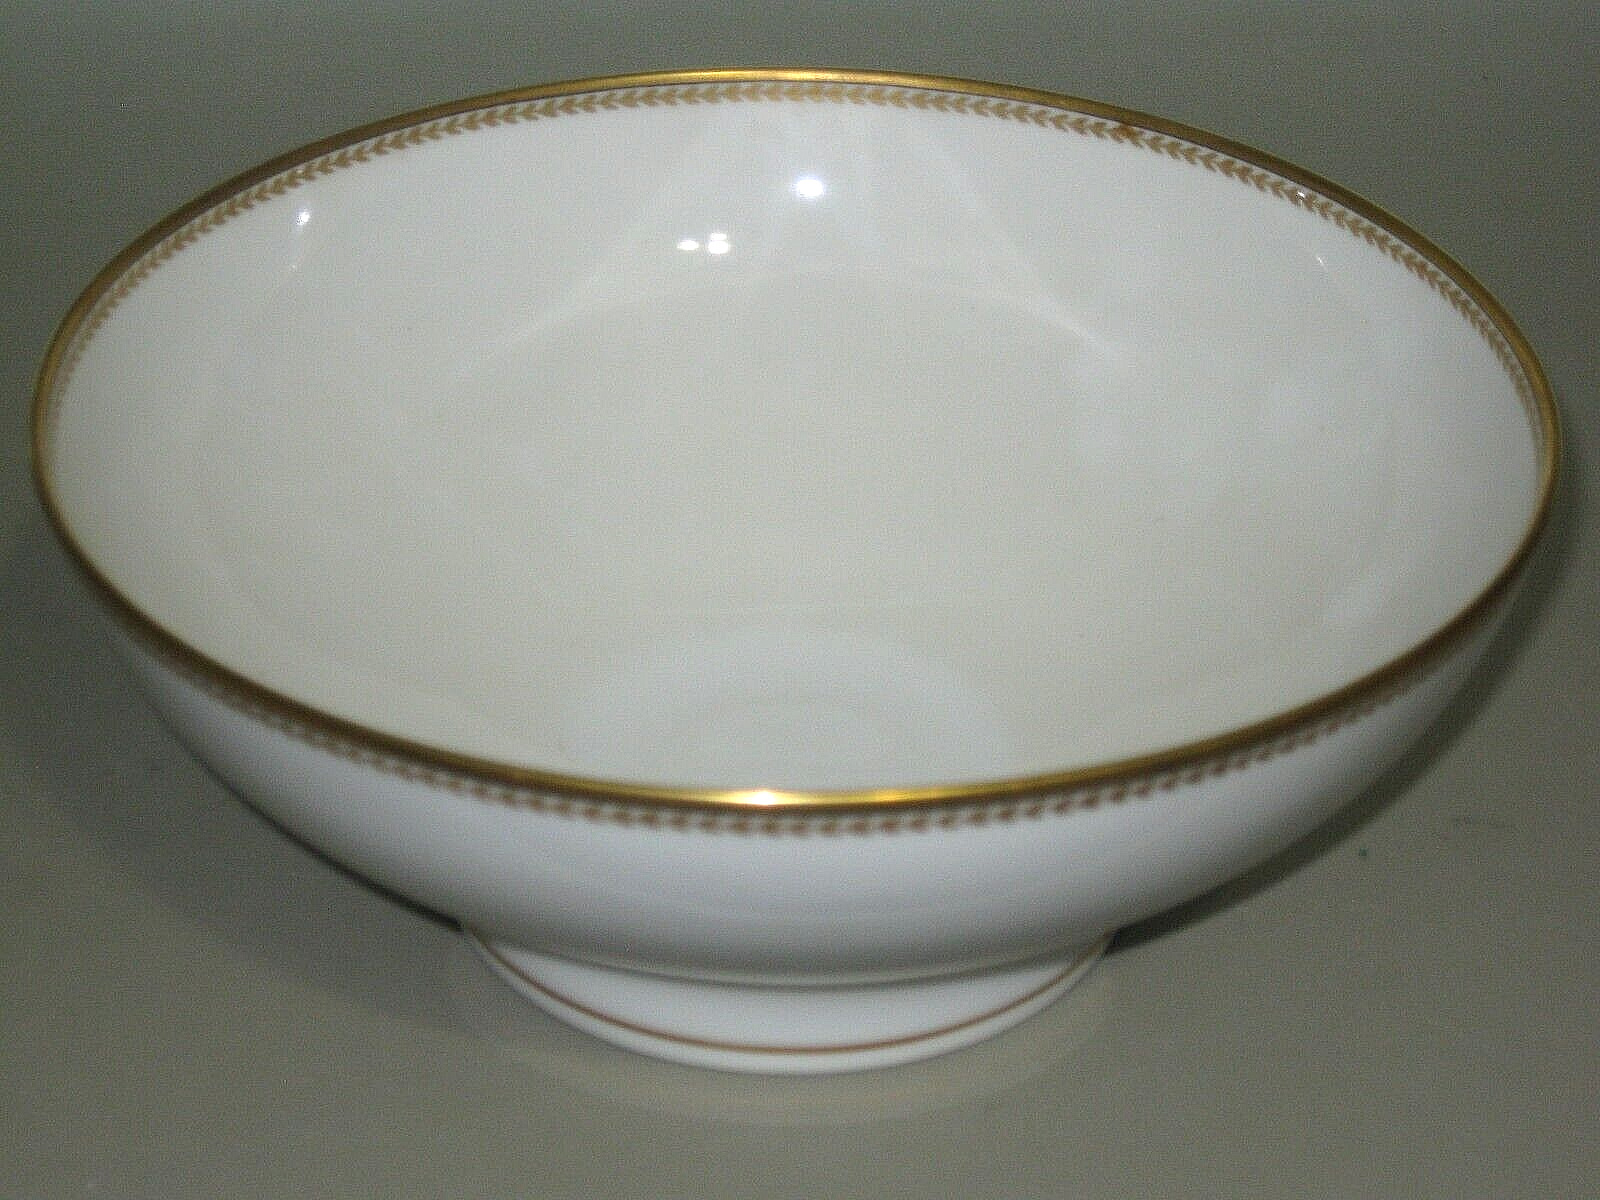 Antique/Vintage Haviland France Large China Fruit Bowl White Gold Encrusted Trim